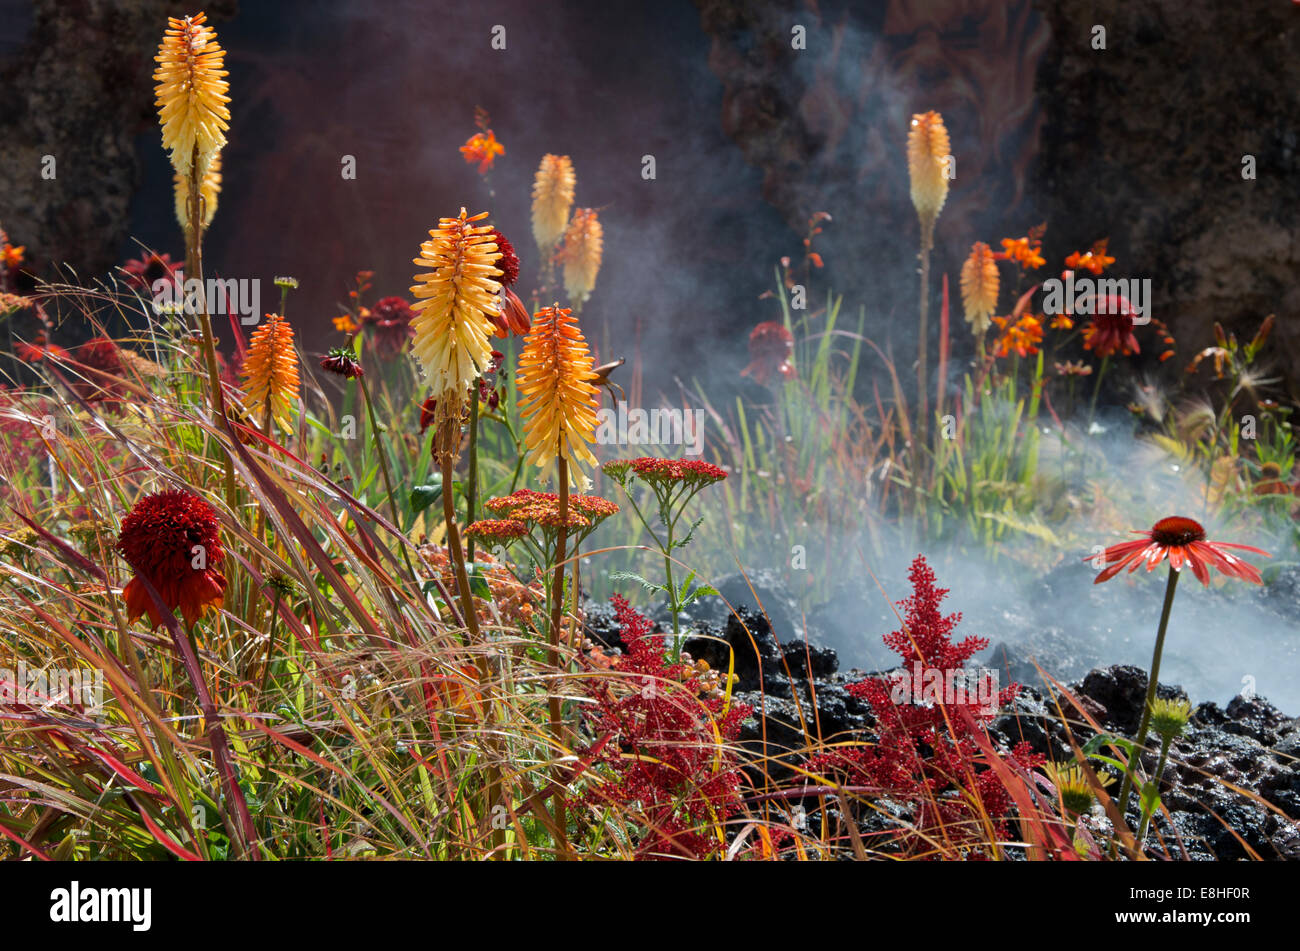 Goldmedaille konzeptuellen Garten, Zorn - Eruption des ungeheilten Zorns von Nilufer Danis entworfen. Stockfoto